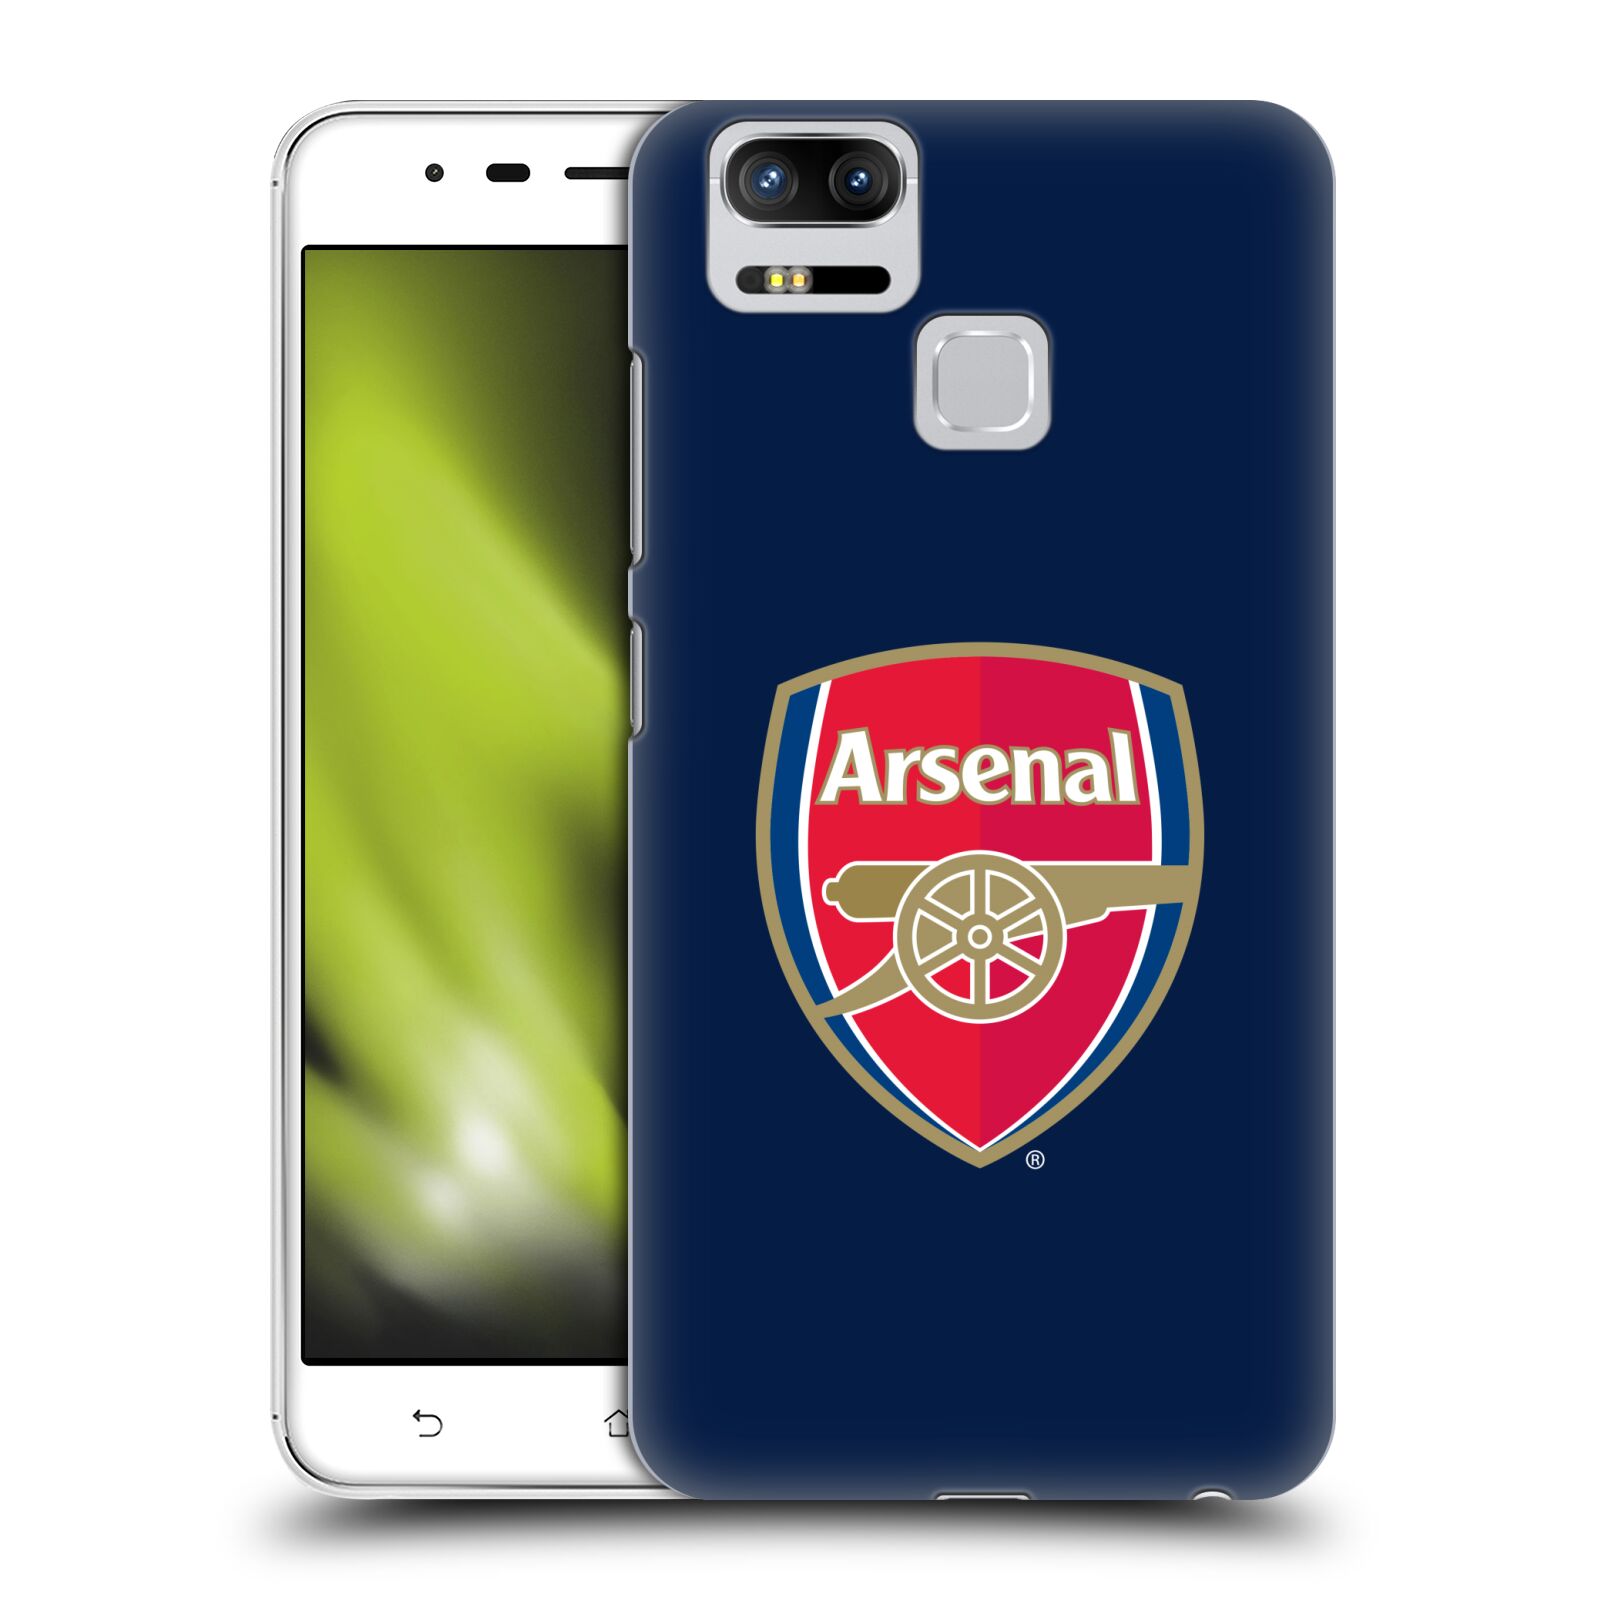 HEAD CASE plastový obal na mobil Asus Zenfone 3 Zoom ZE553KL Fotbalový klub Arsenal znak barevný modré pozadí